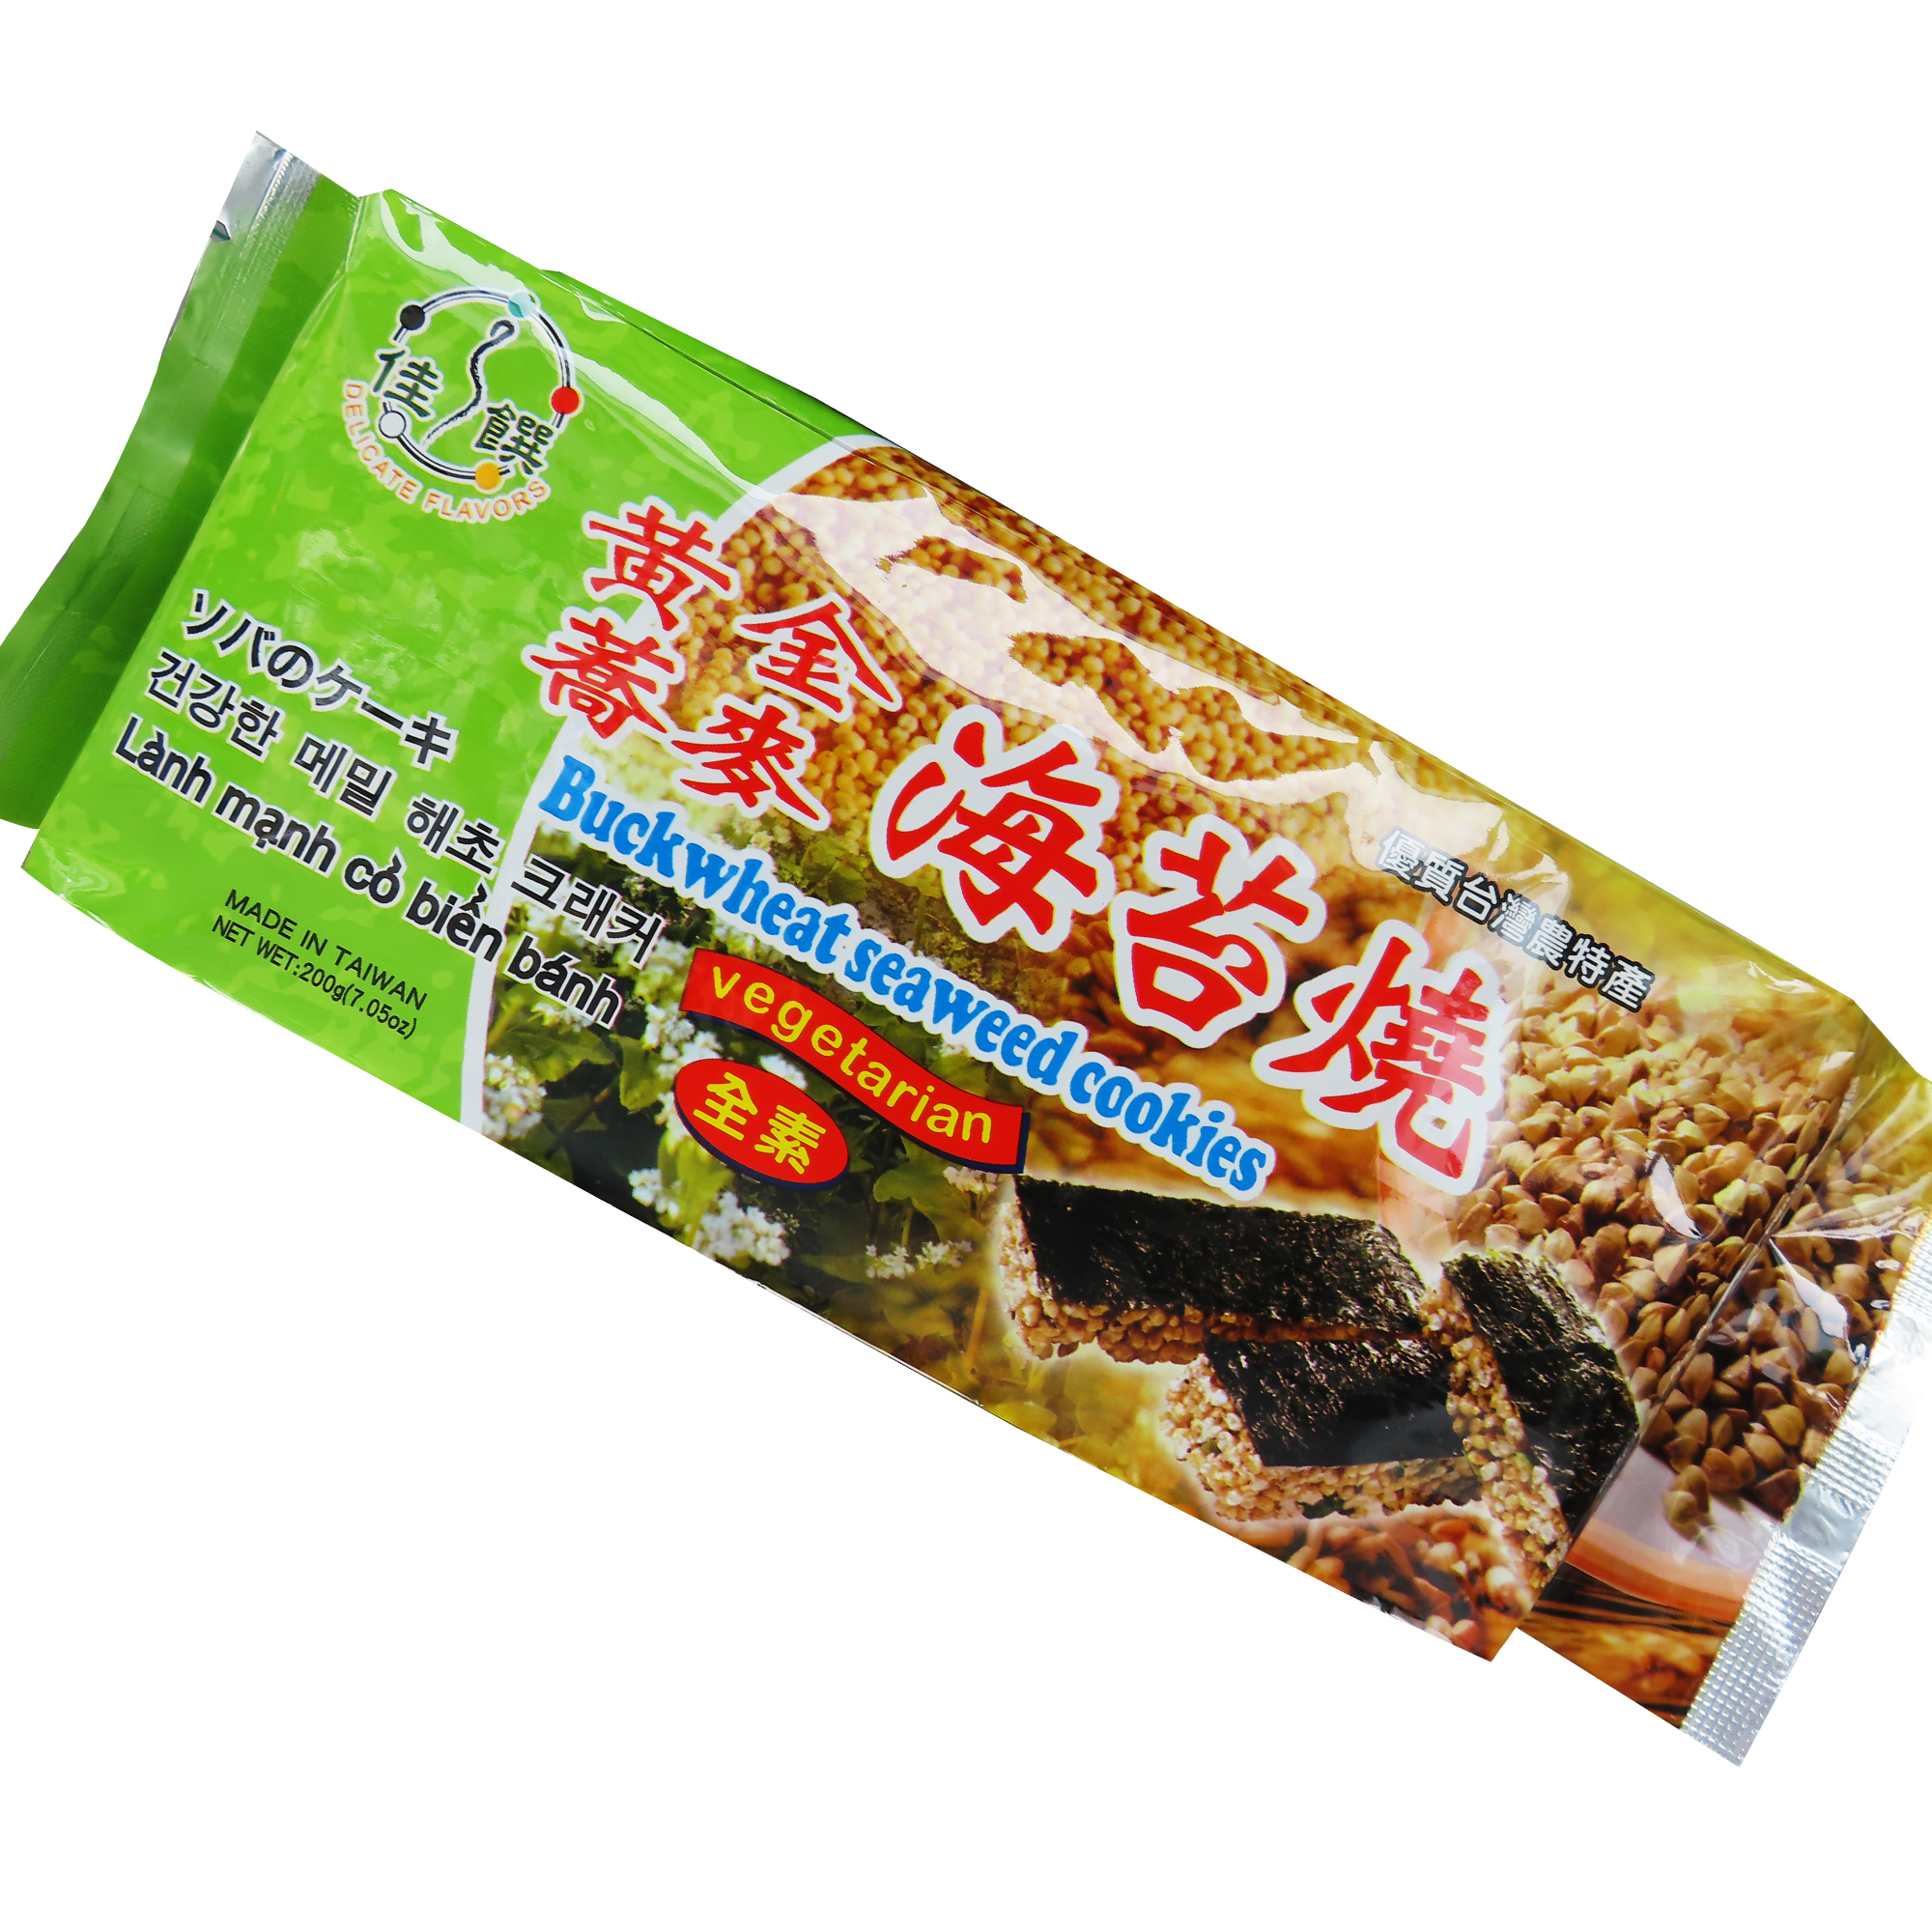 Image Buckwheat Seaweed Cookies 佳馔-黃金荞麦海苔烧 200 grams